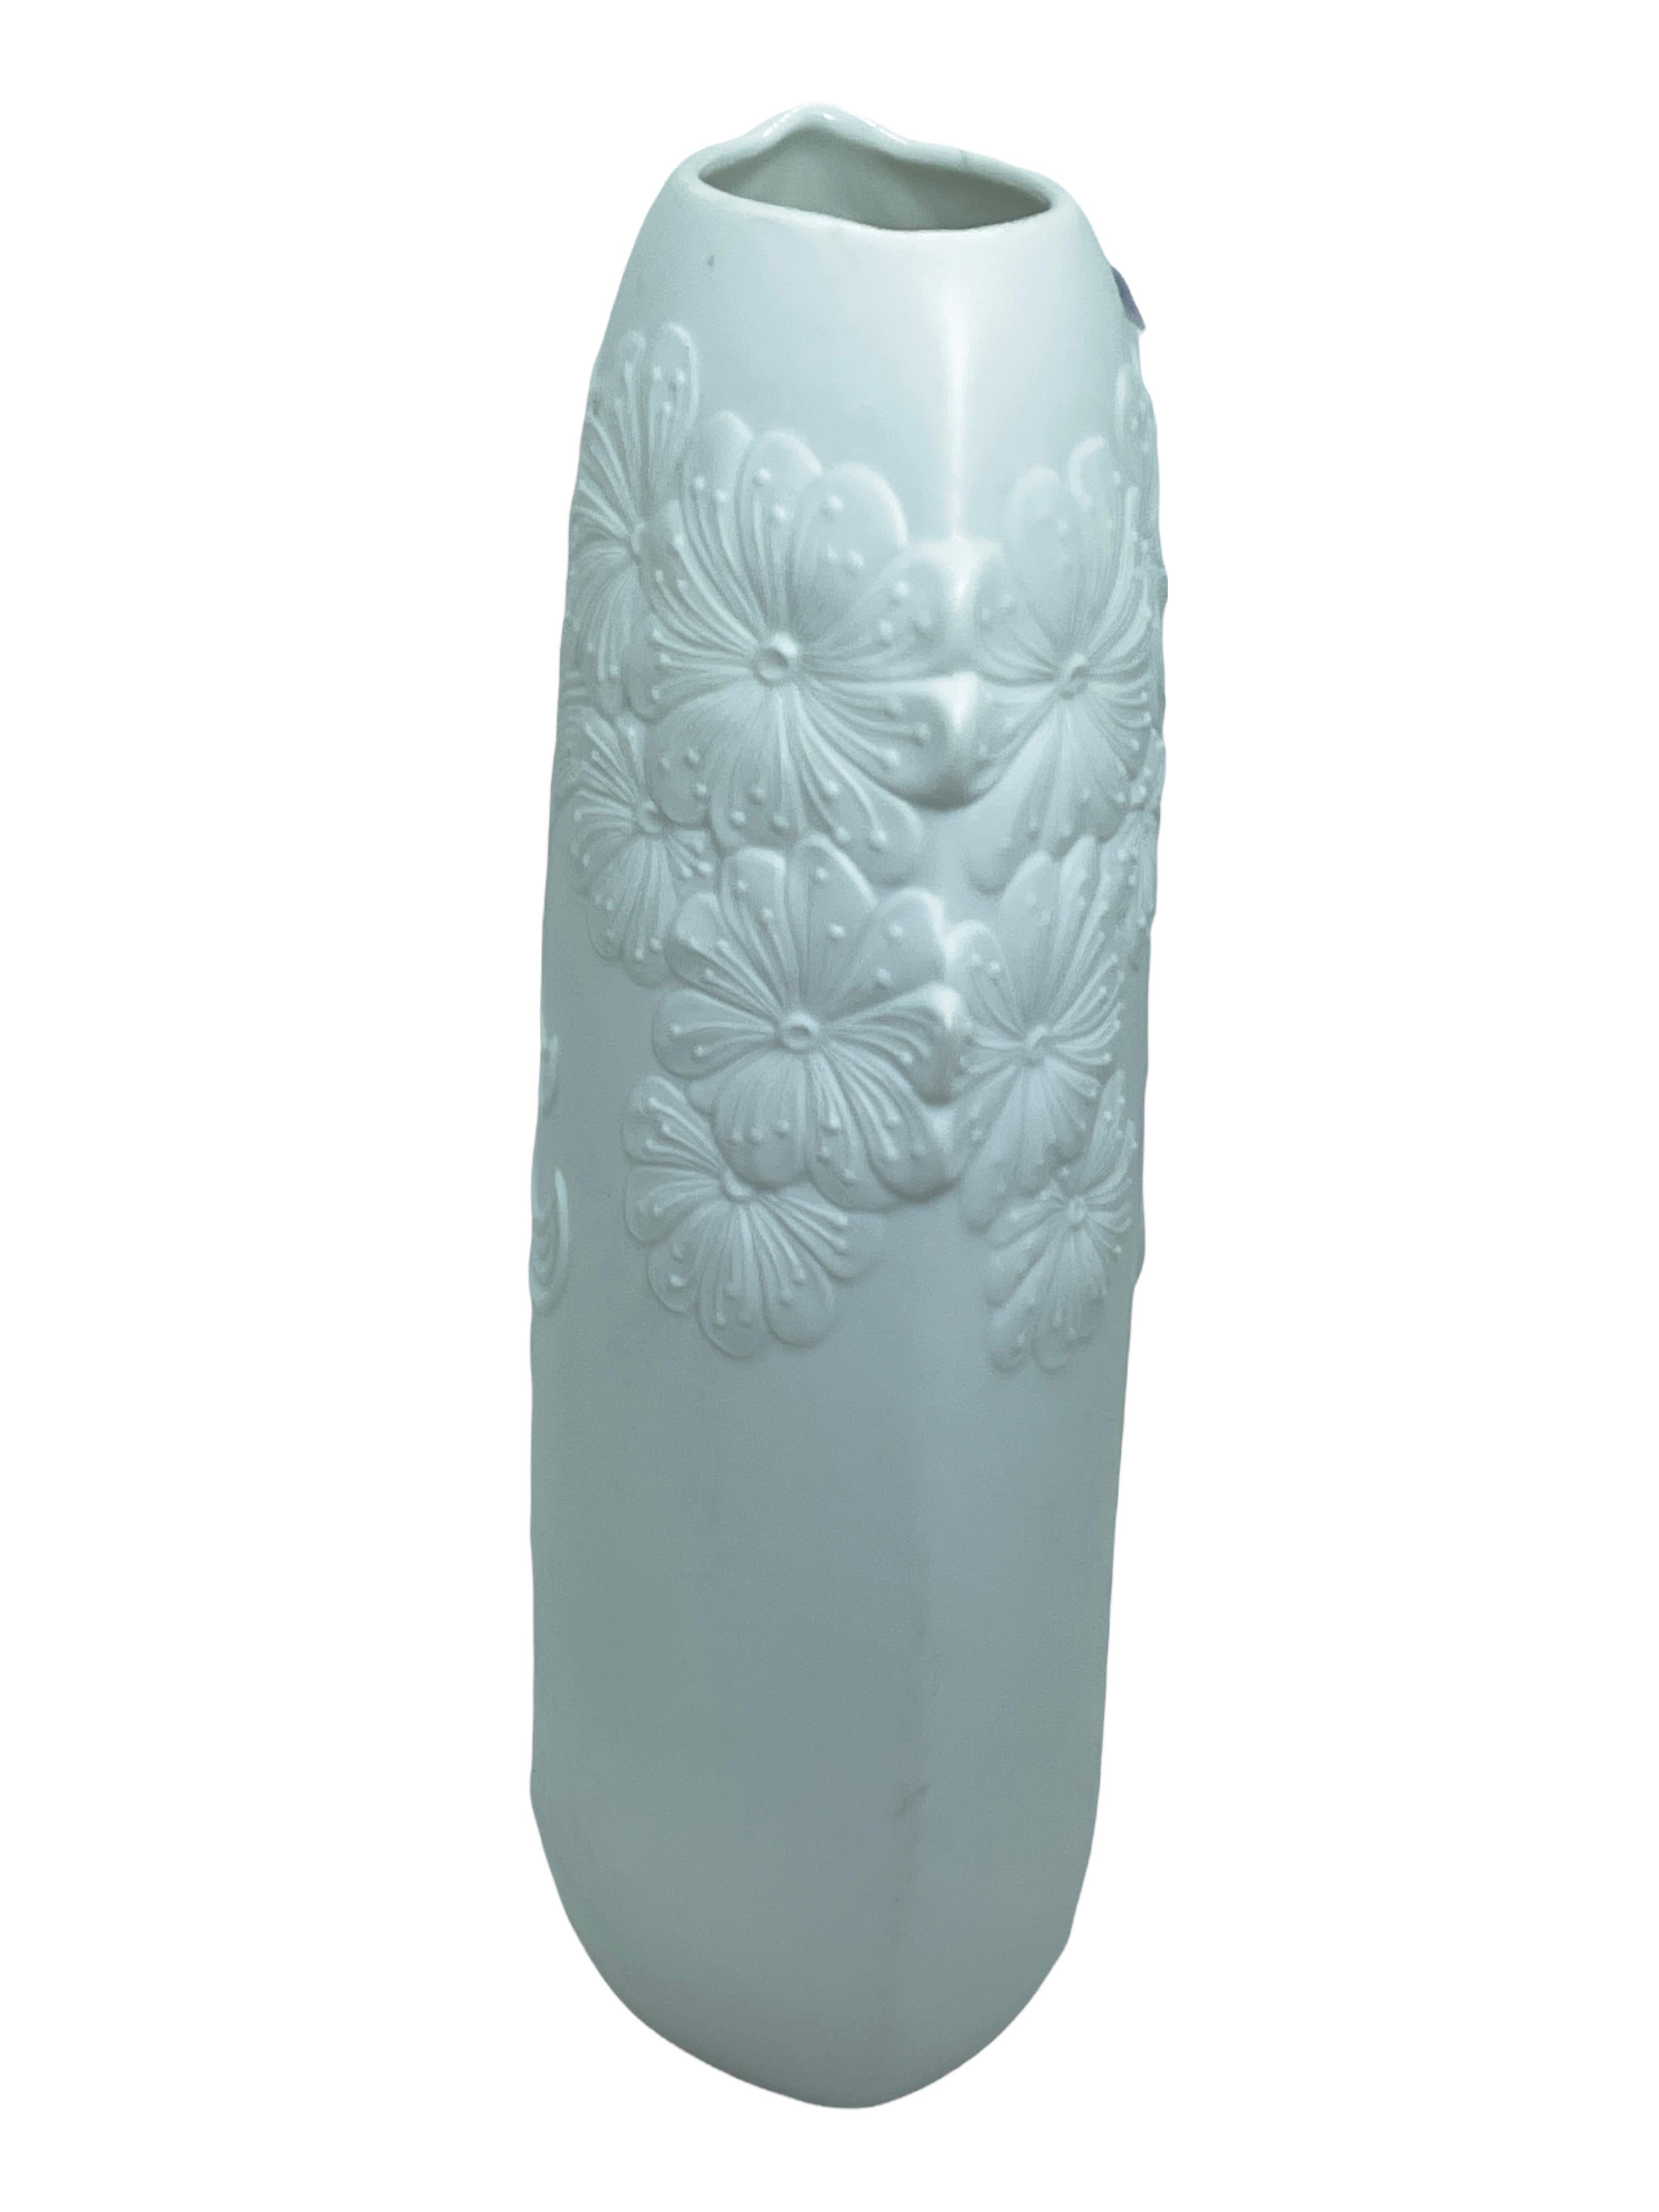 Eine erstaunliche Biskuit-Porzellan Mitte des Jahrhunderts Studio Kunst Keramik Vase in Deutschland gemacht, von Kaiser Porzellan, signiert M. Frey, ca. 1970er Jahre. Die Vase ist in sehr gutem Zustand, ohne Chips, Risse oder Flohbisse. Signiert mit